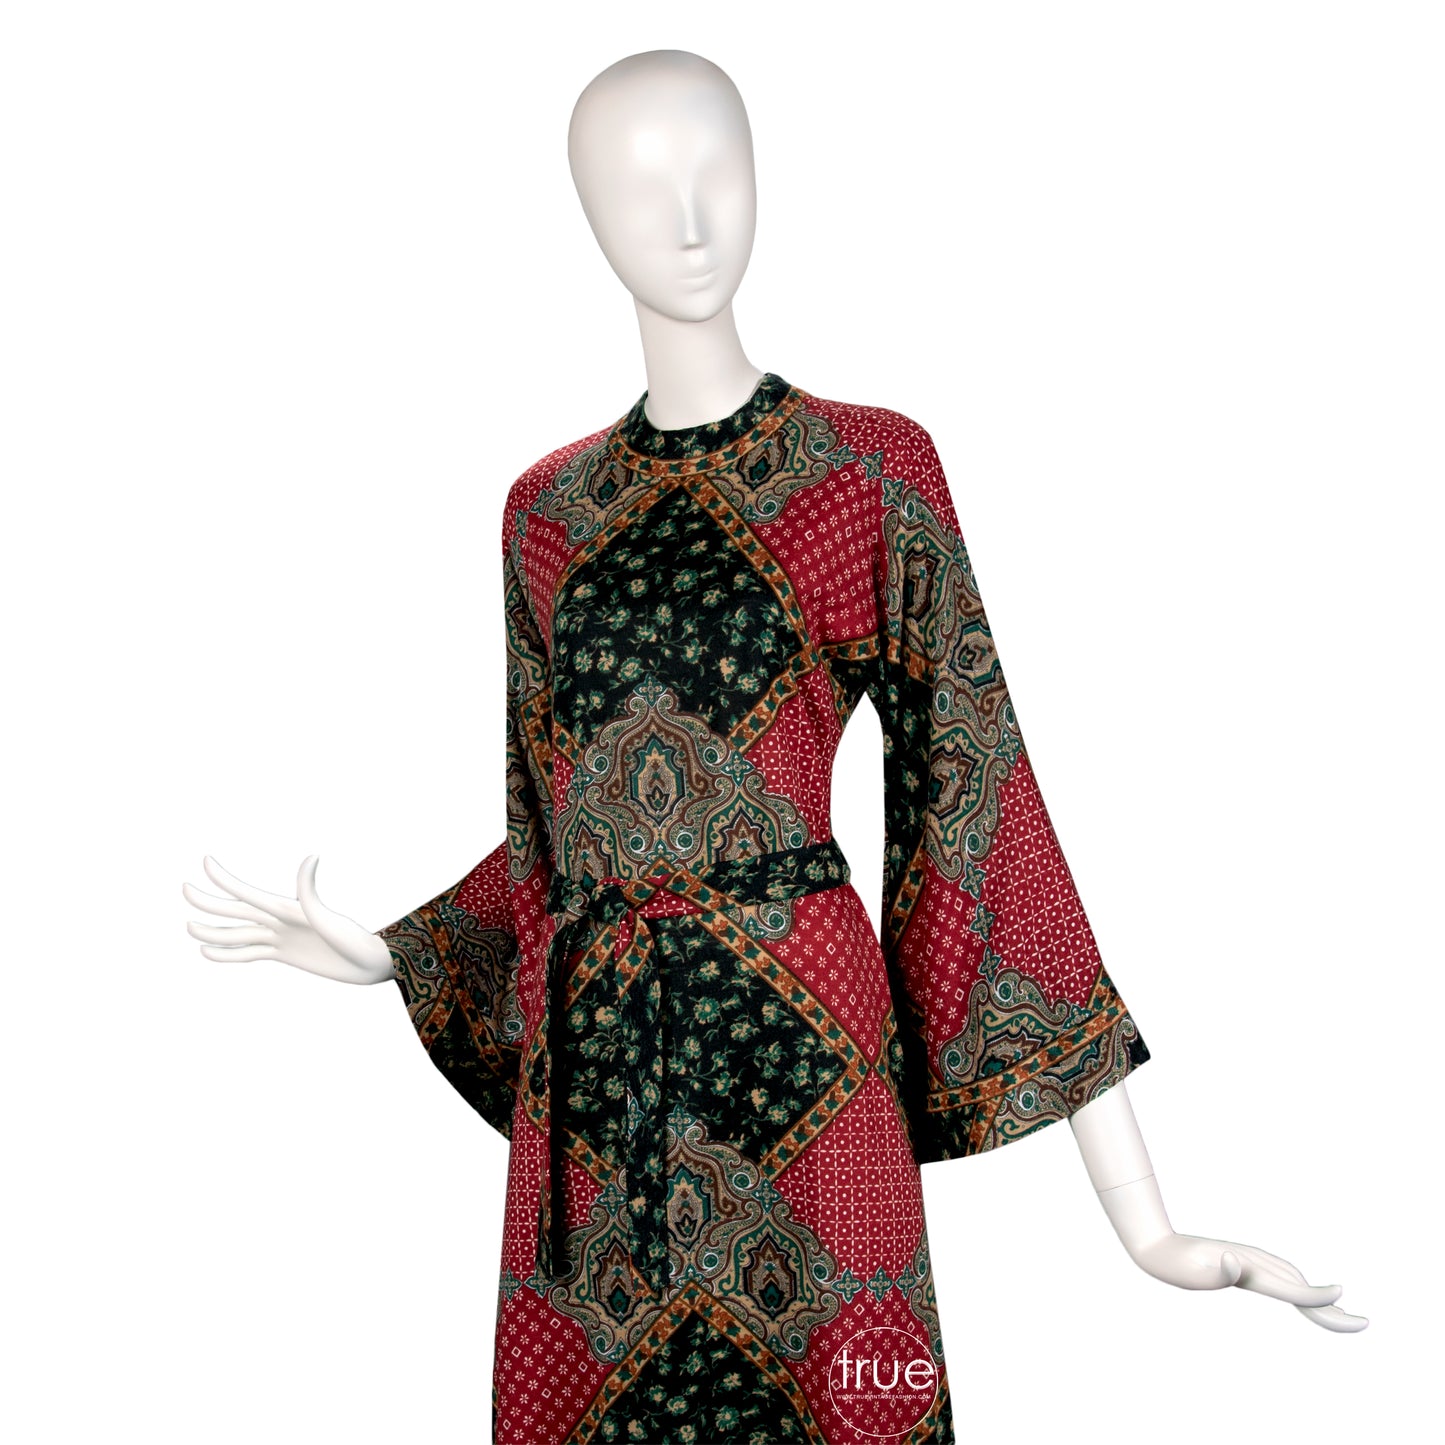 vintage 1960's dress ...amazing designer Tina Leser Original wool ethnic dashiki caftan dress